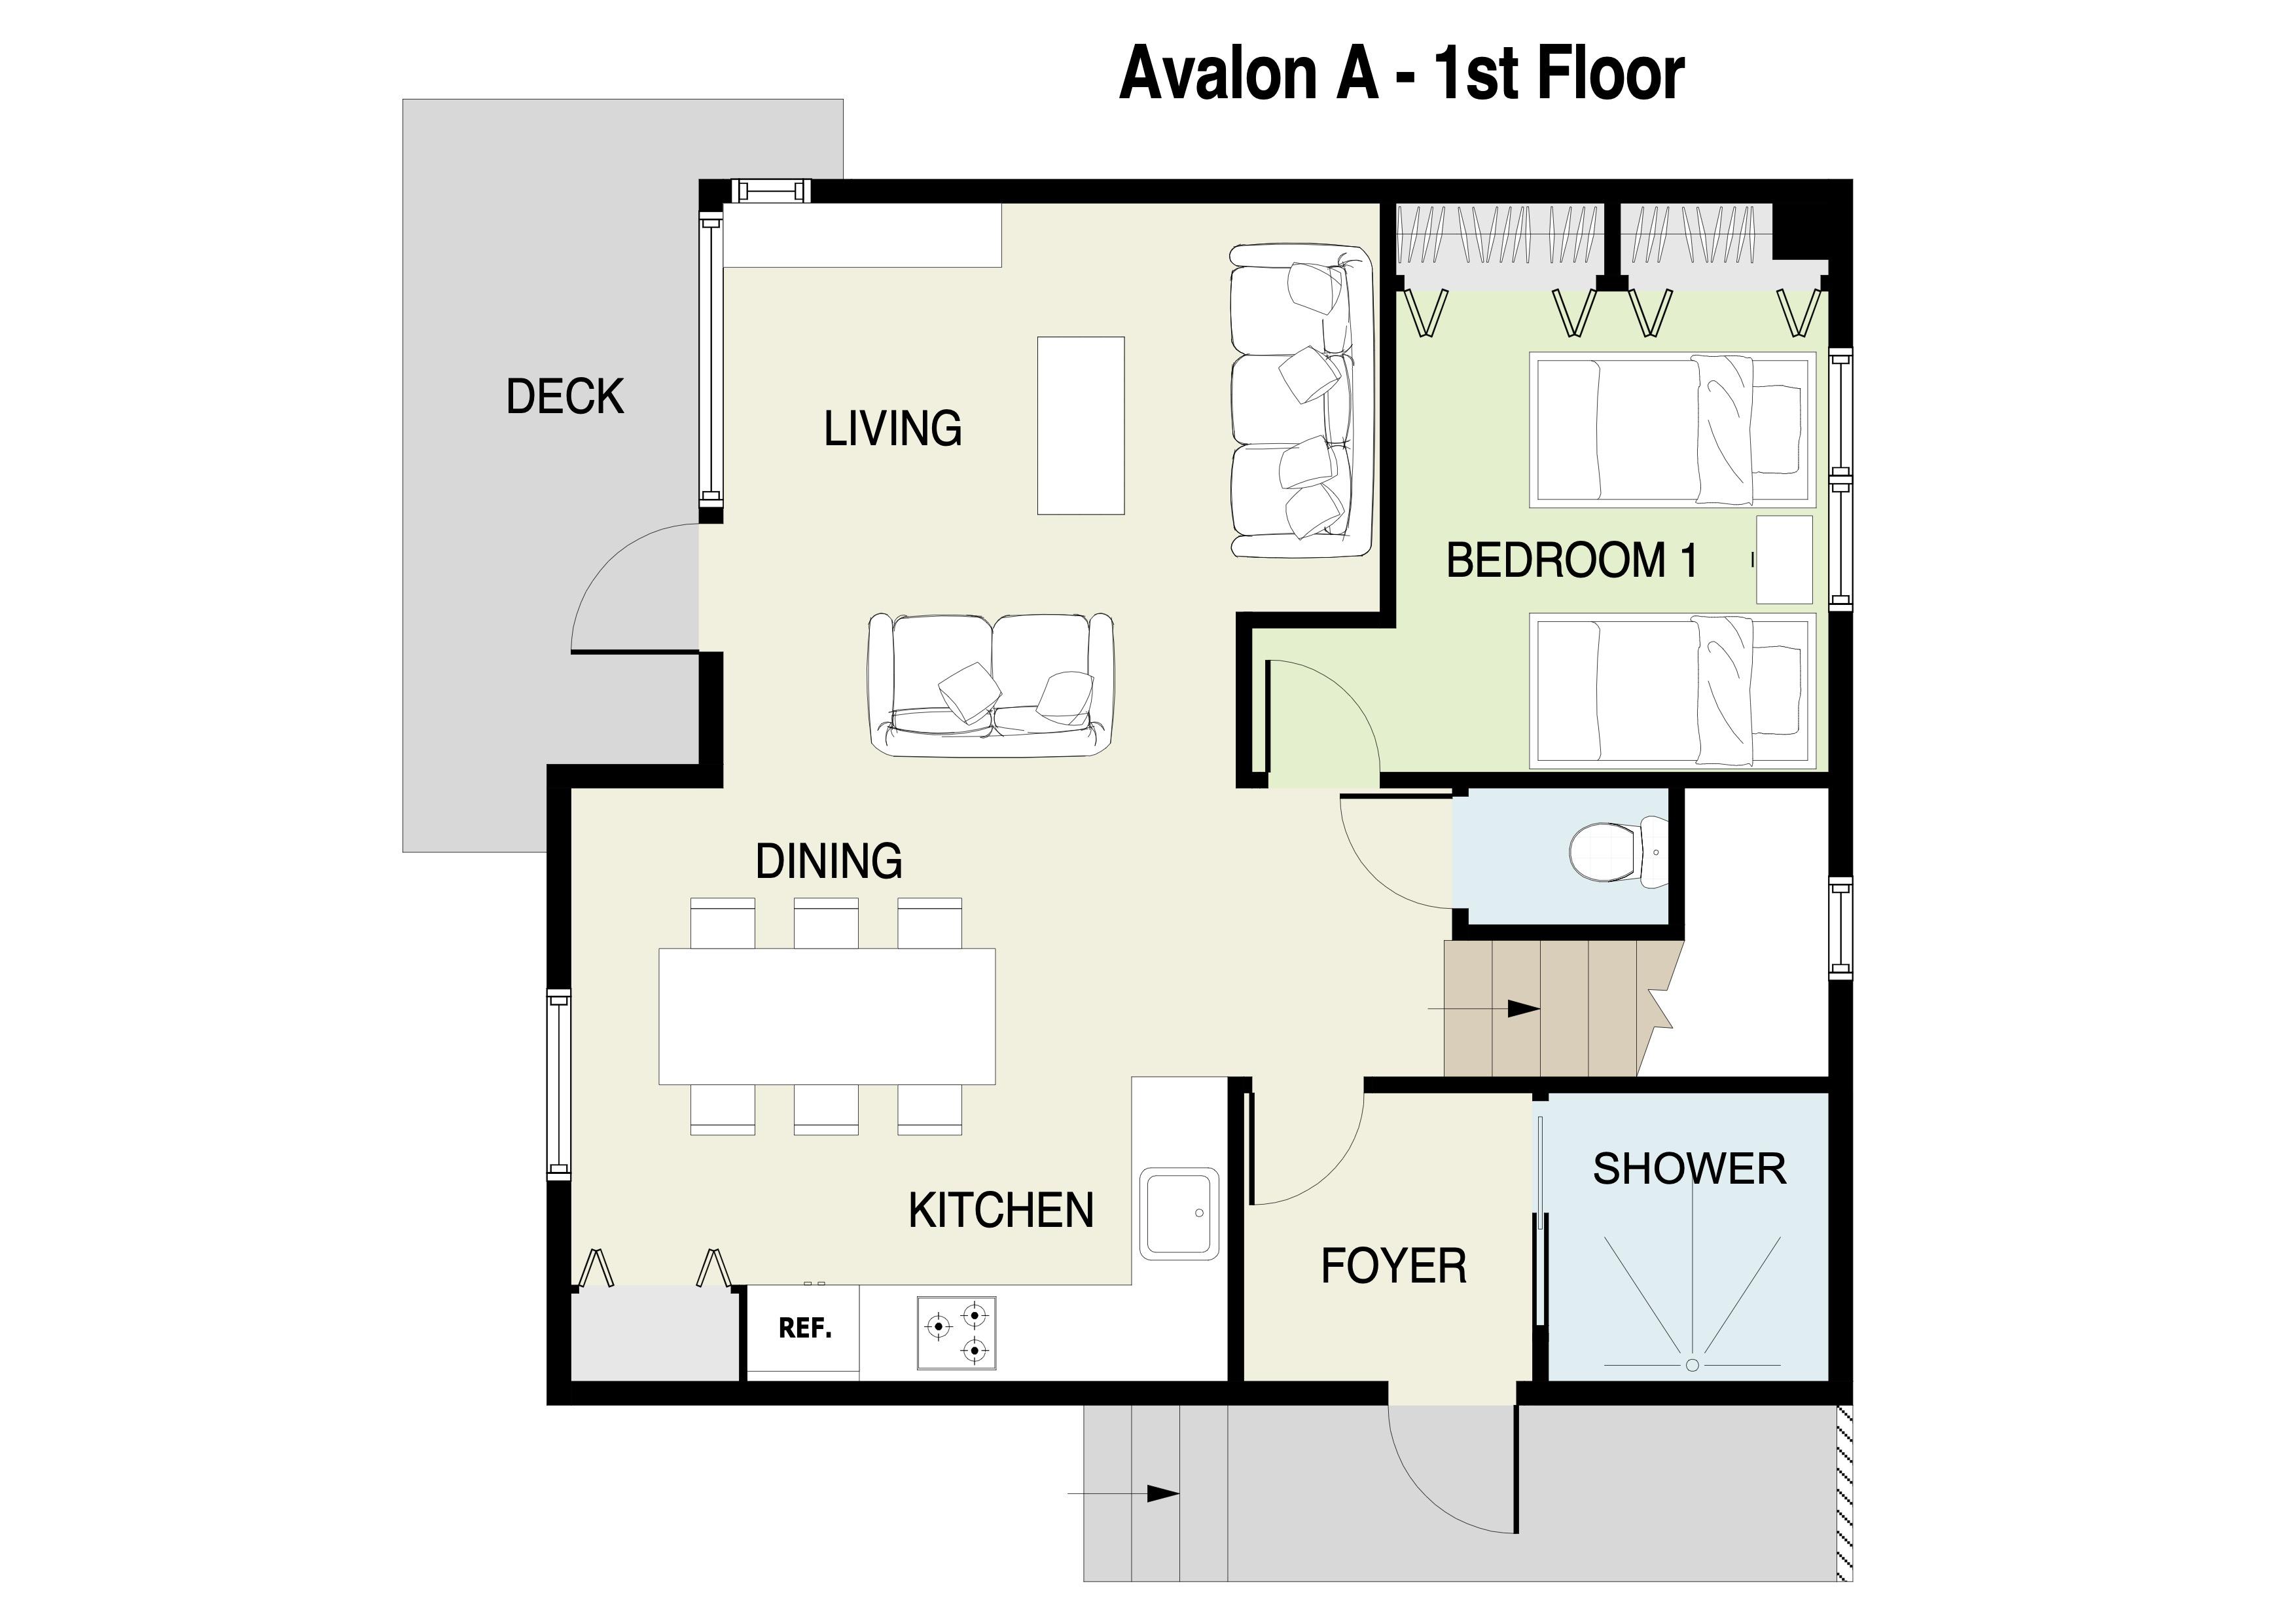 Avalon A 1st floor plans